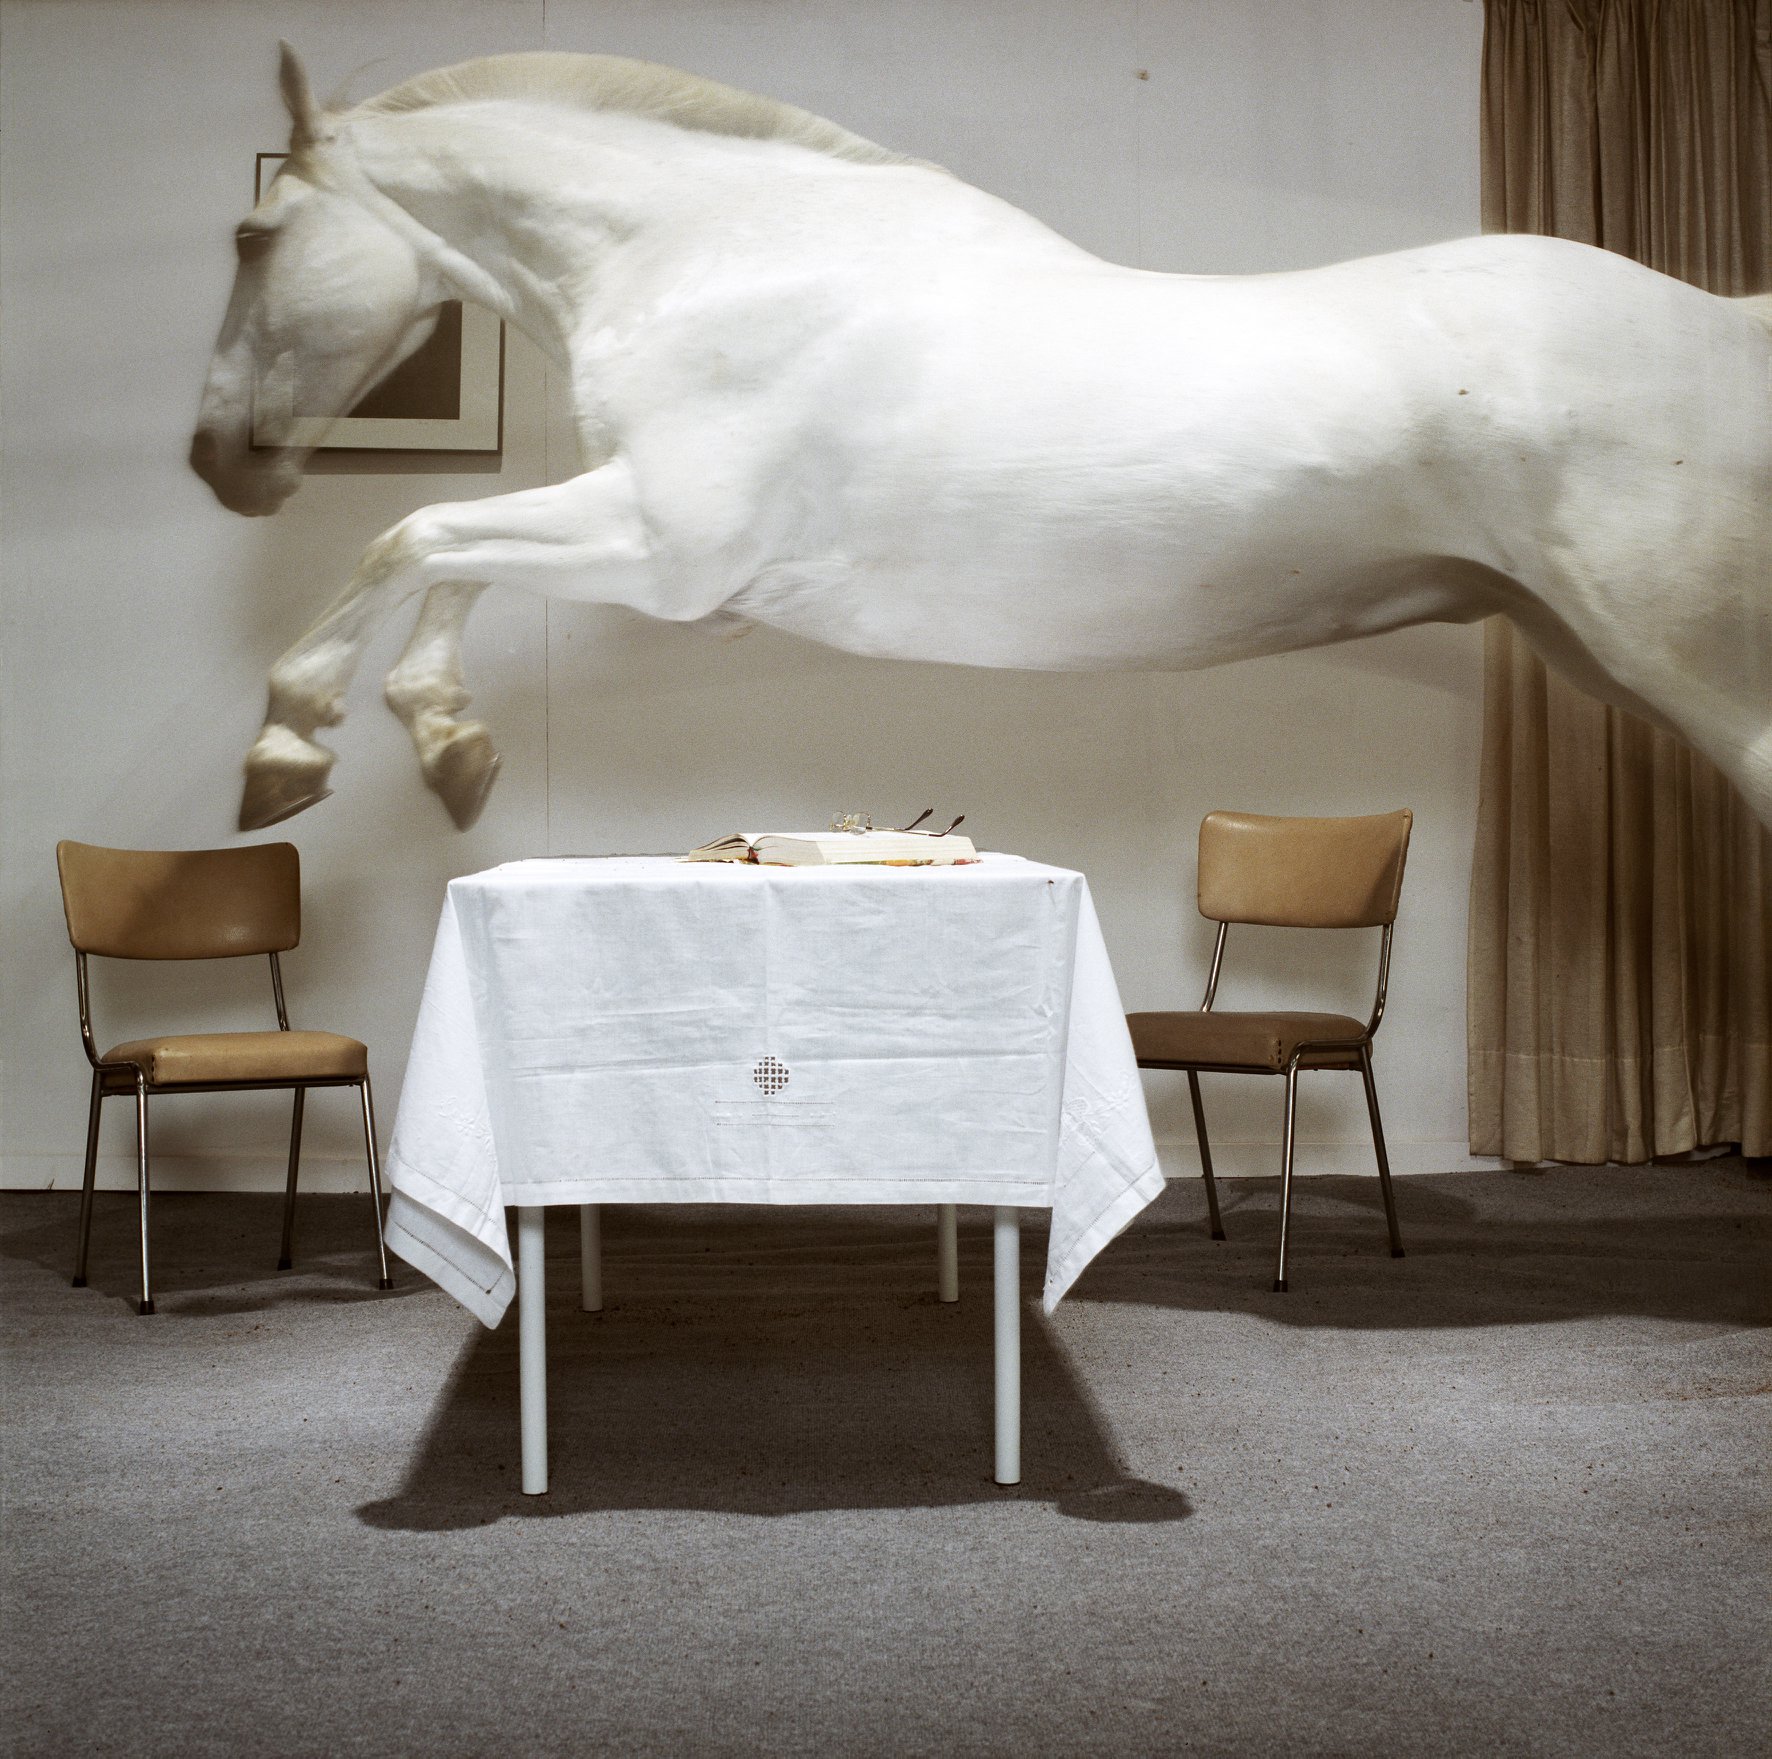 foto van Hannes Wallraven waarop een wit paard over een tafel springt